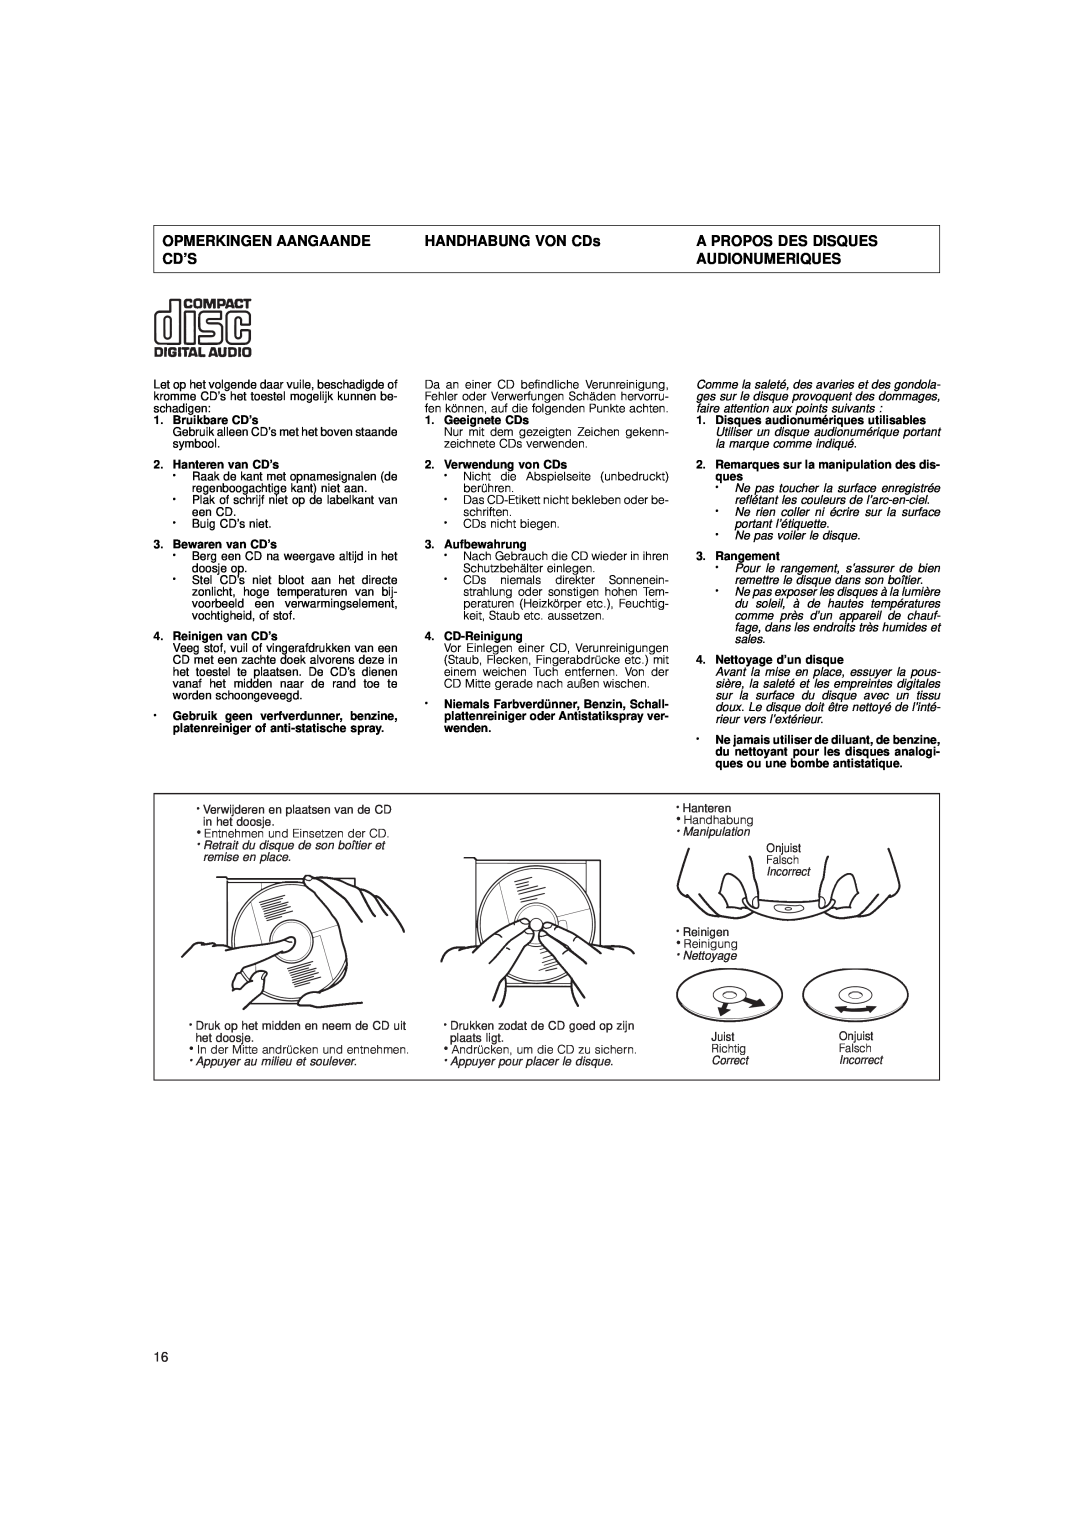 JVC DX-E55 manual Opmerkingen Aangaande, HANDHABUNG VON CDs, A Propos Des Disques, Audionumeriques 